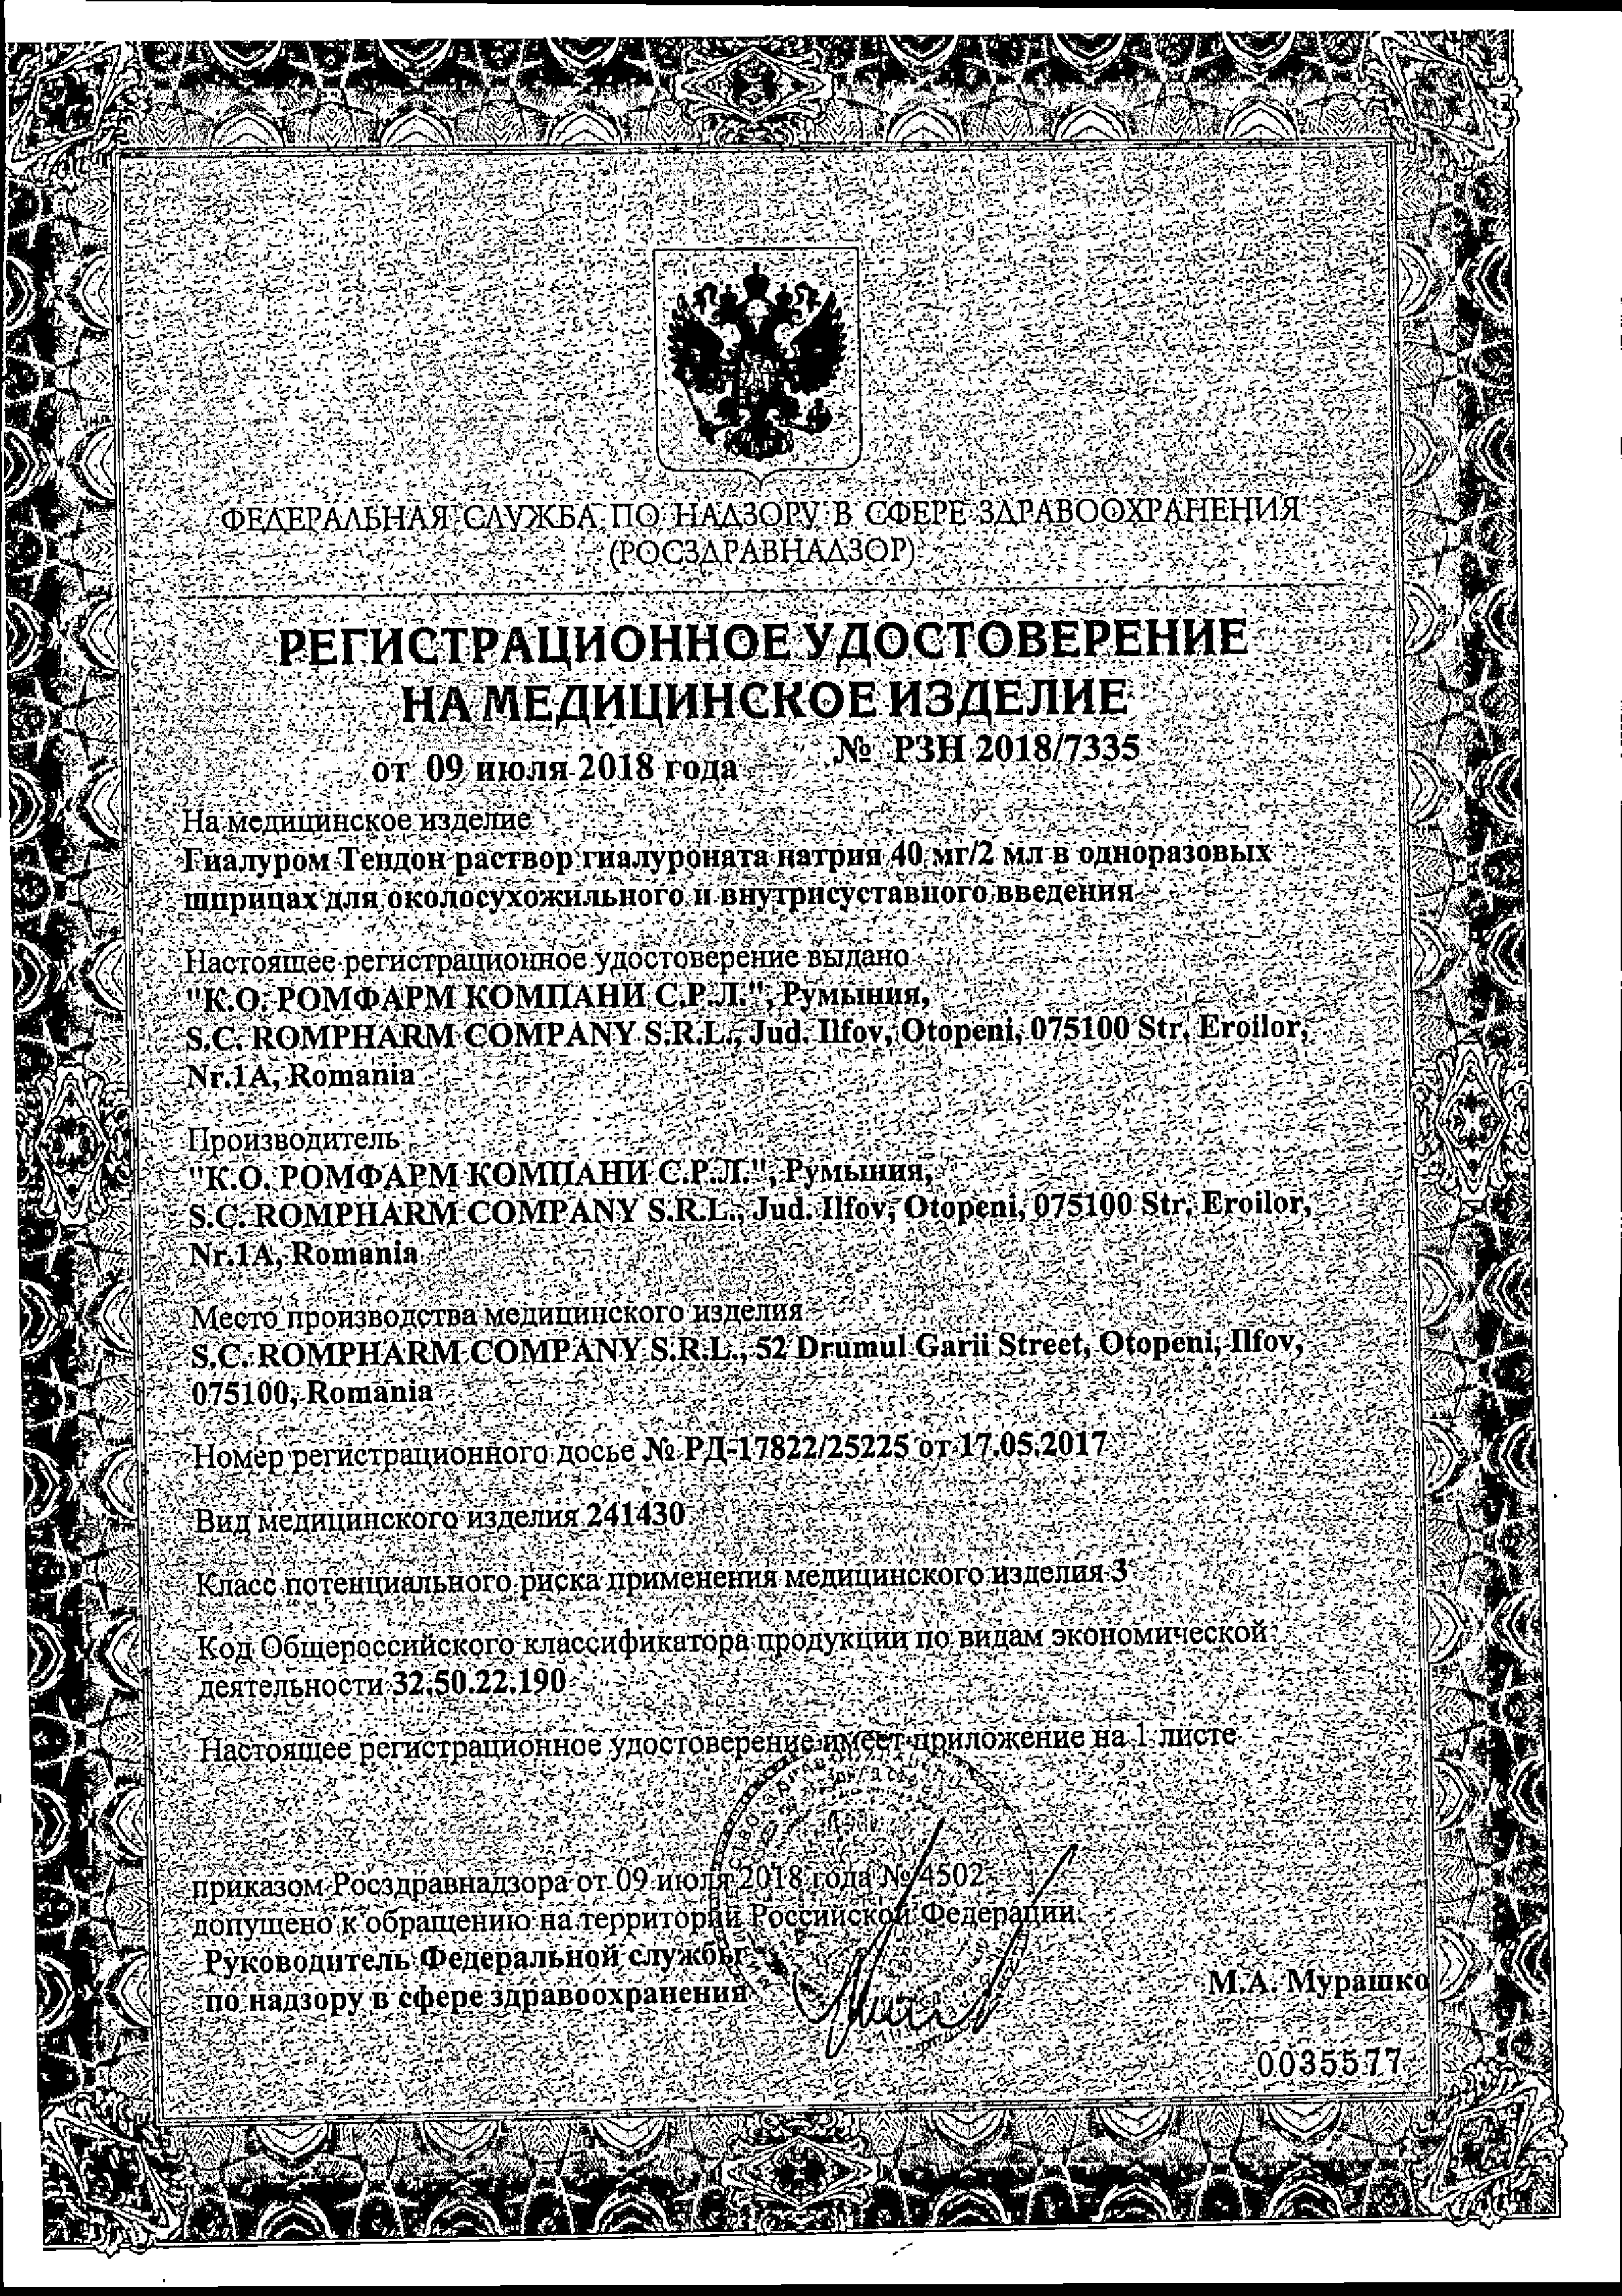 Гиалуром Тендон сертификат